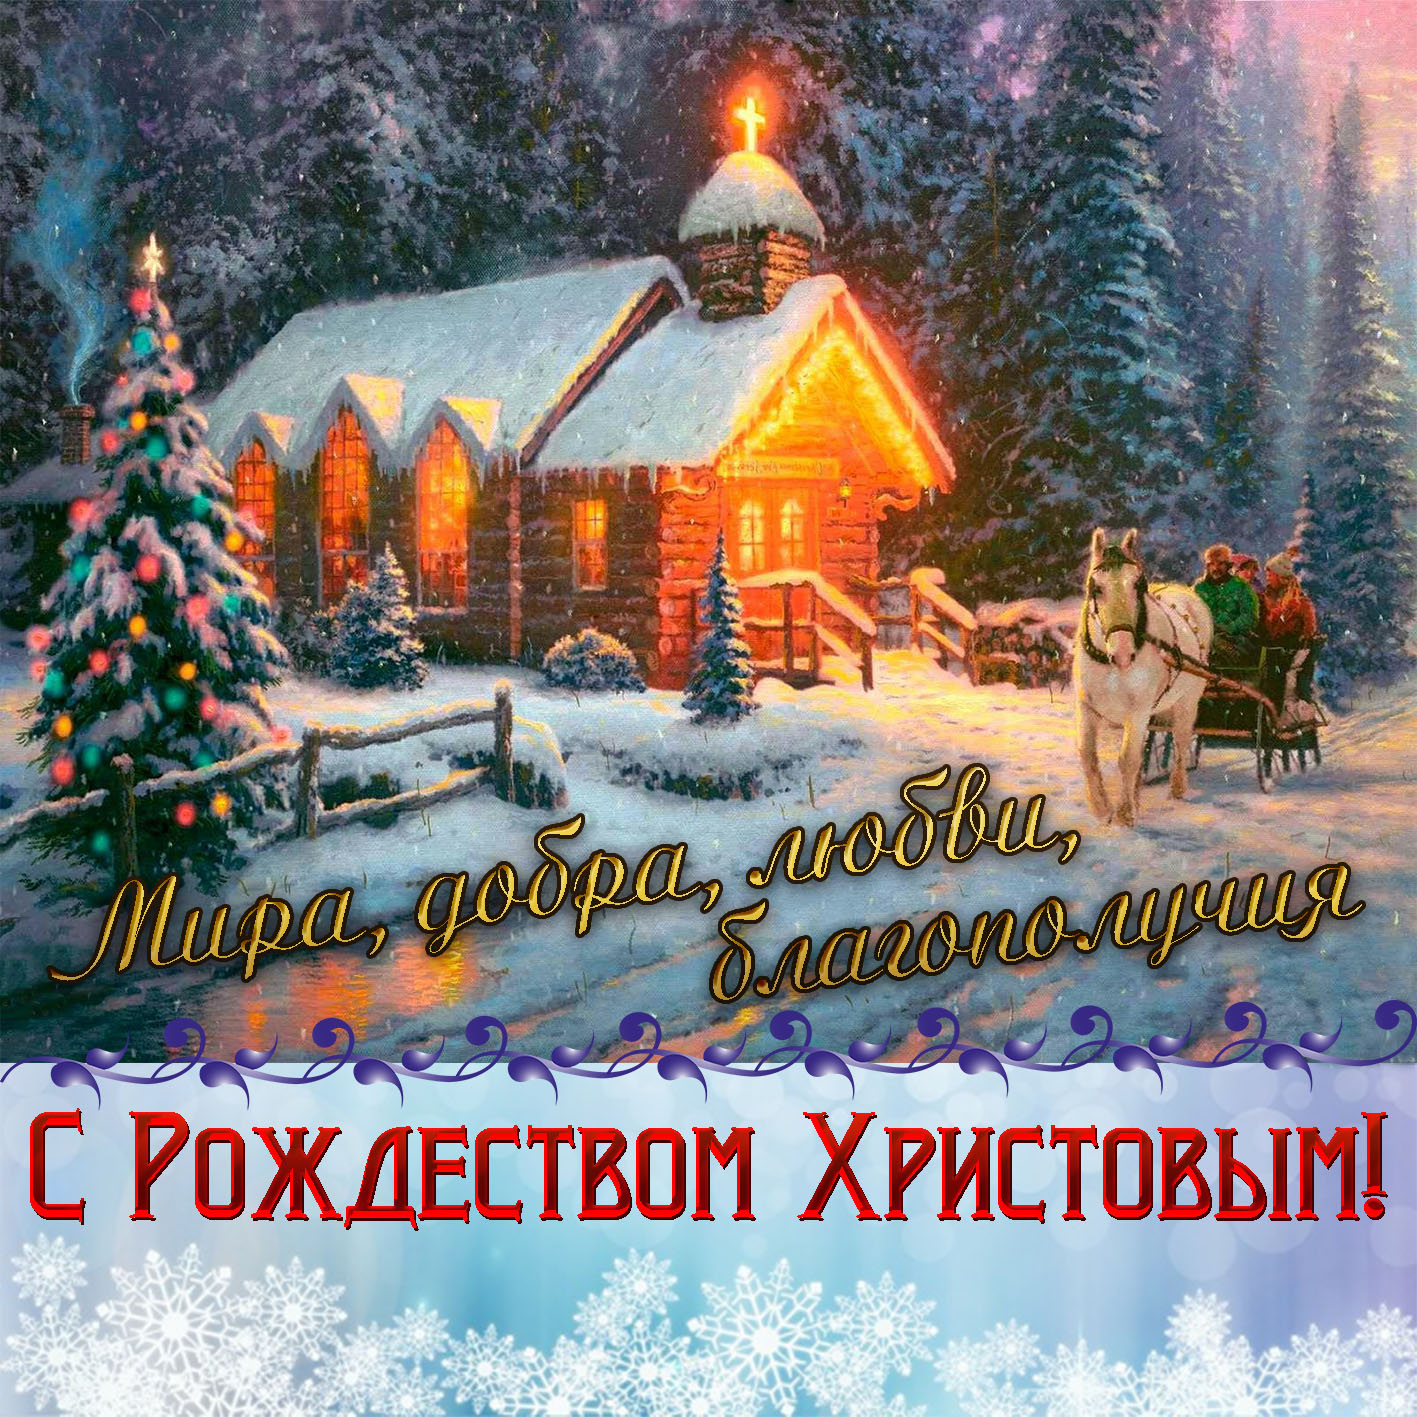 С Рождеством православных!